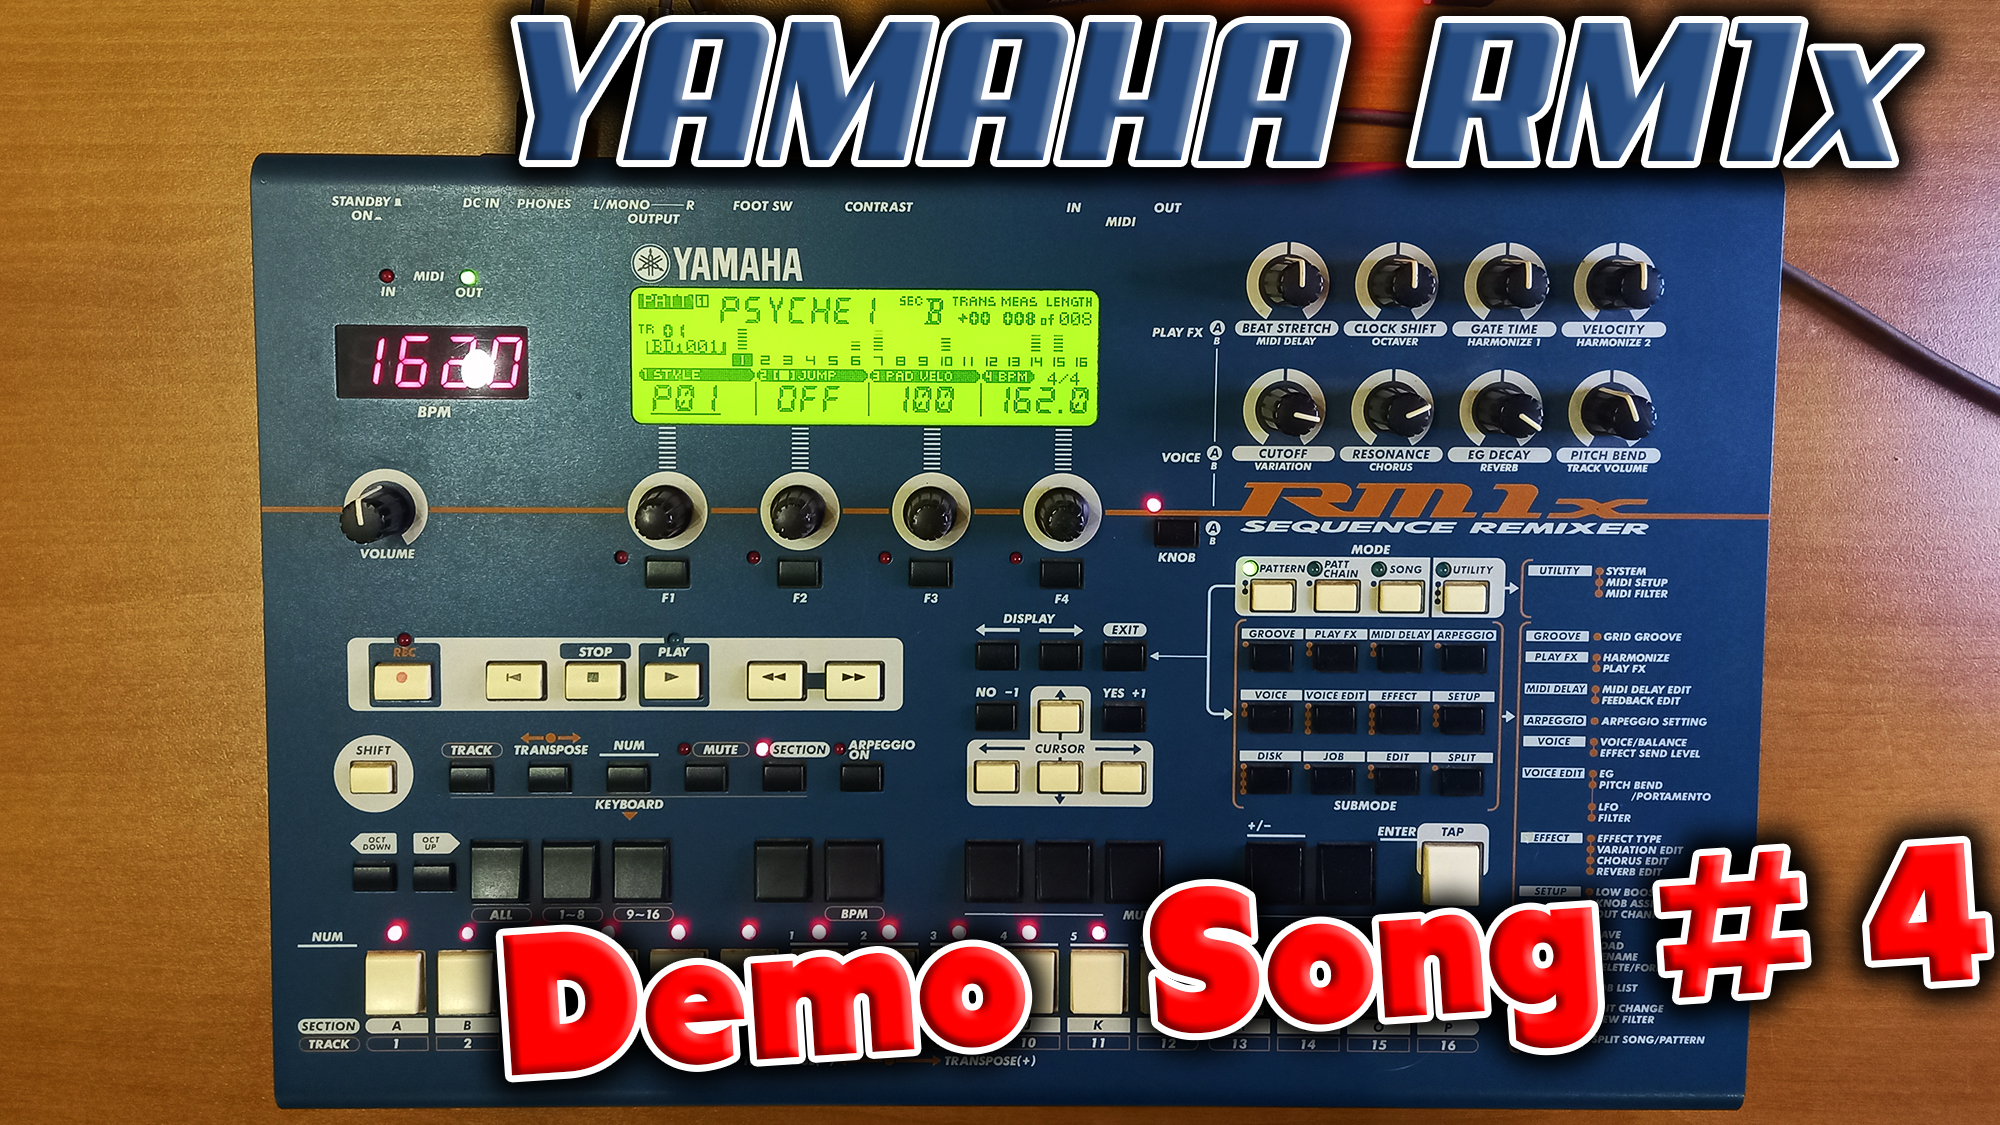 Грувбокс из далёкого 1999 года - Yamaha RM1x !  Слушаем Demo song #4